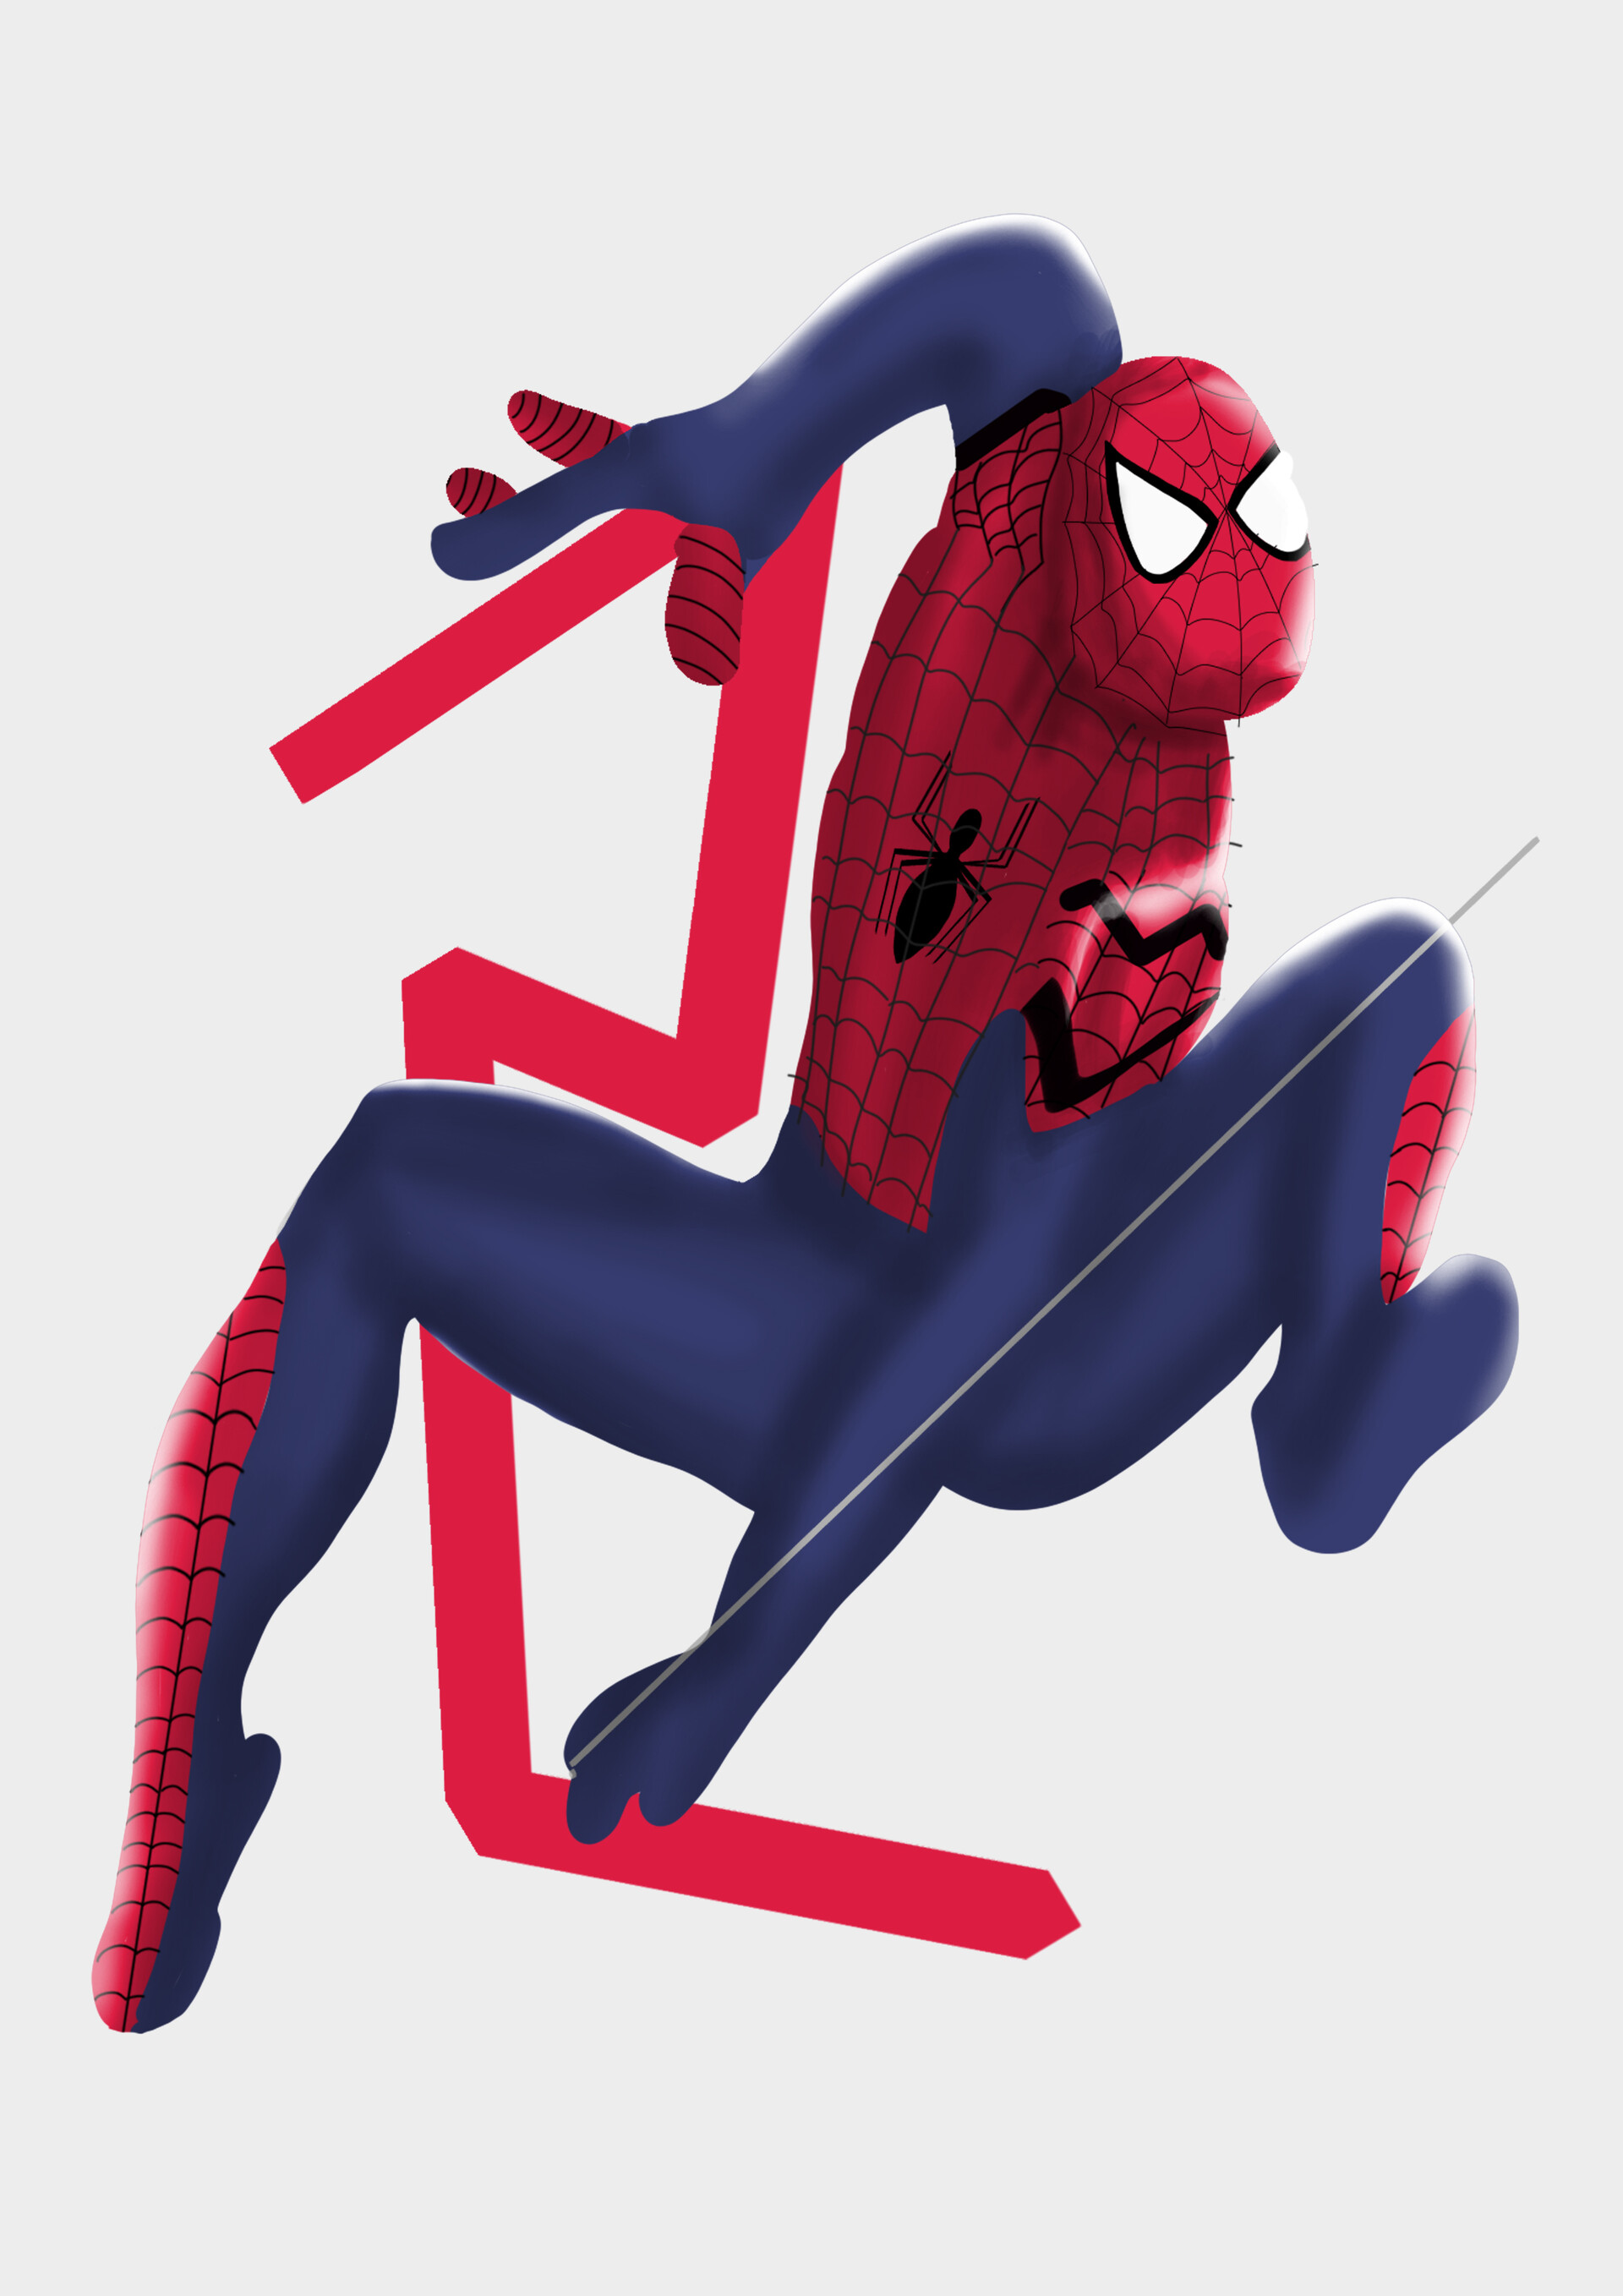 ArtStation - Spiderman